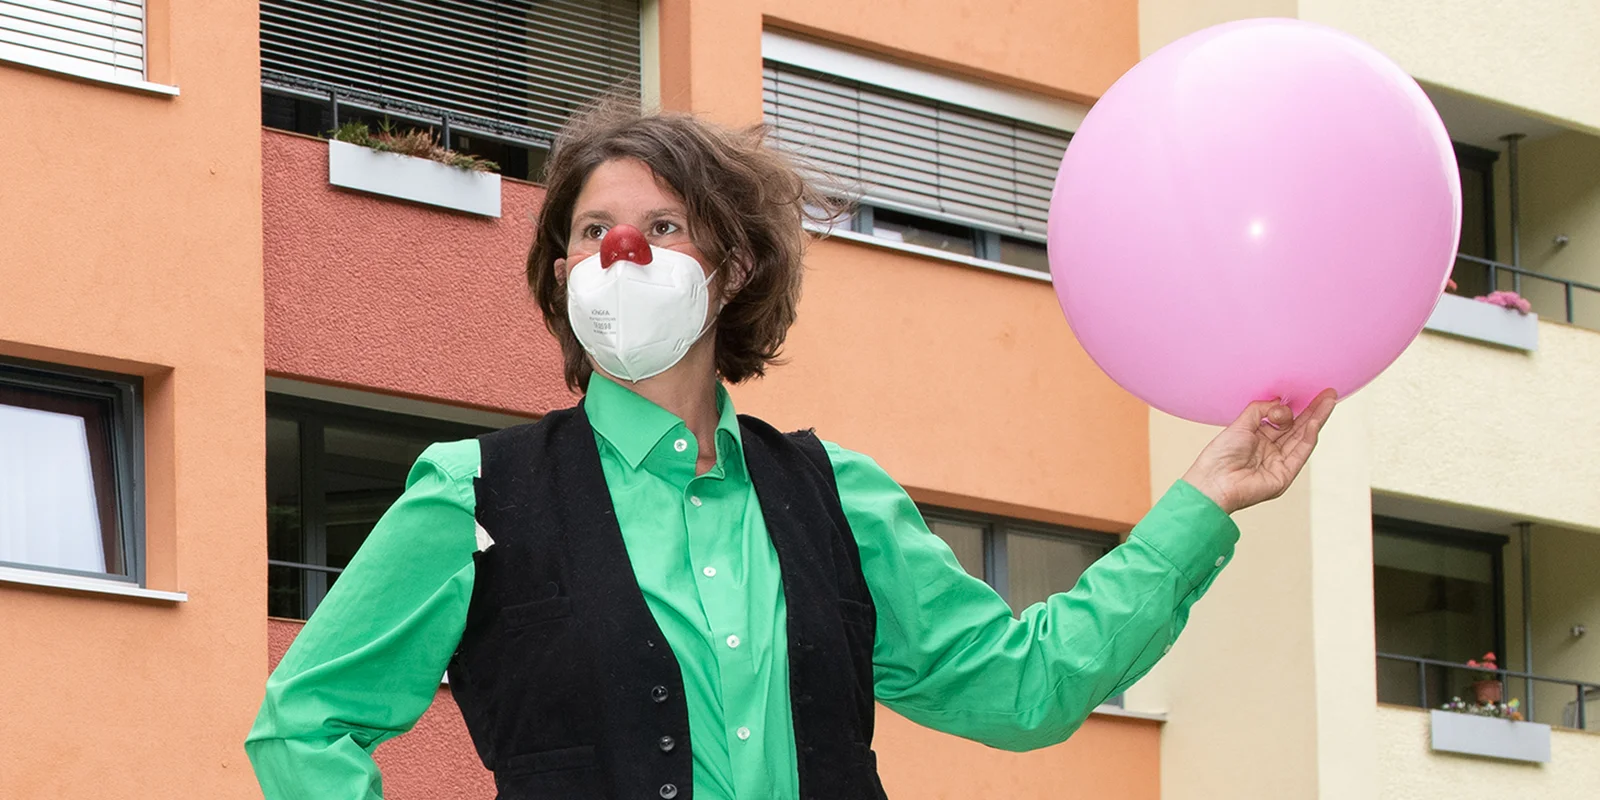 Norika Wacker trägt eine FFP2-Maske und hält einen rosa Ballon in der Hand. Sie hat eine rote Clownsnase auf ihrer FFP2-Maske.